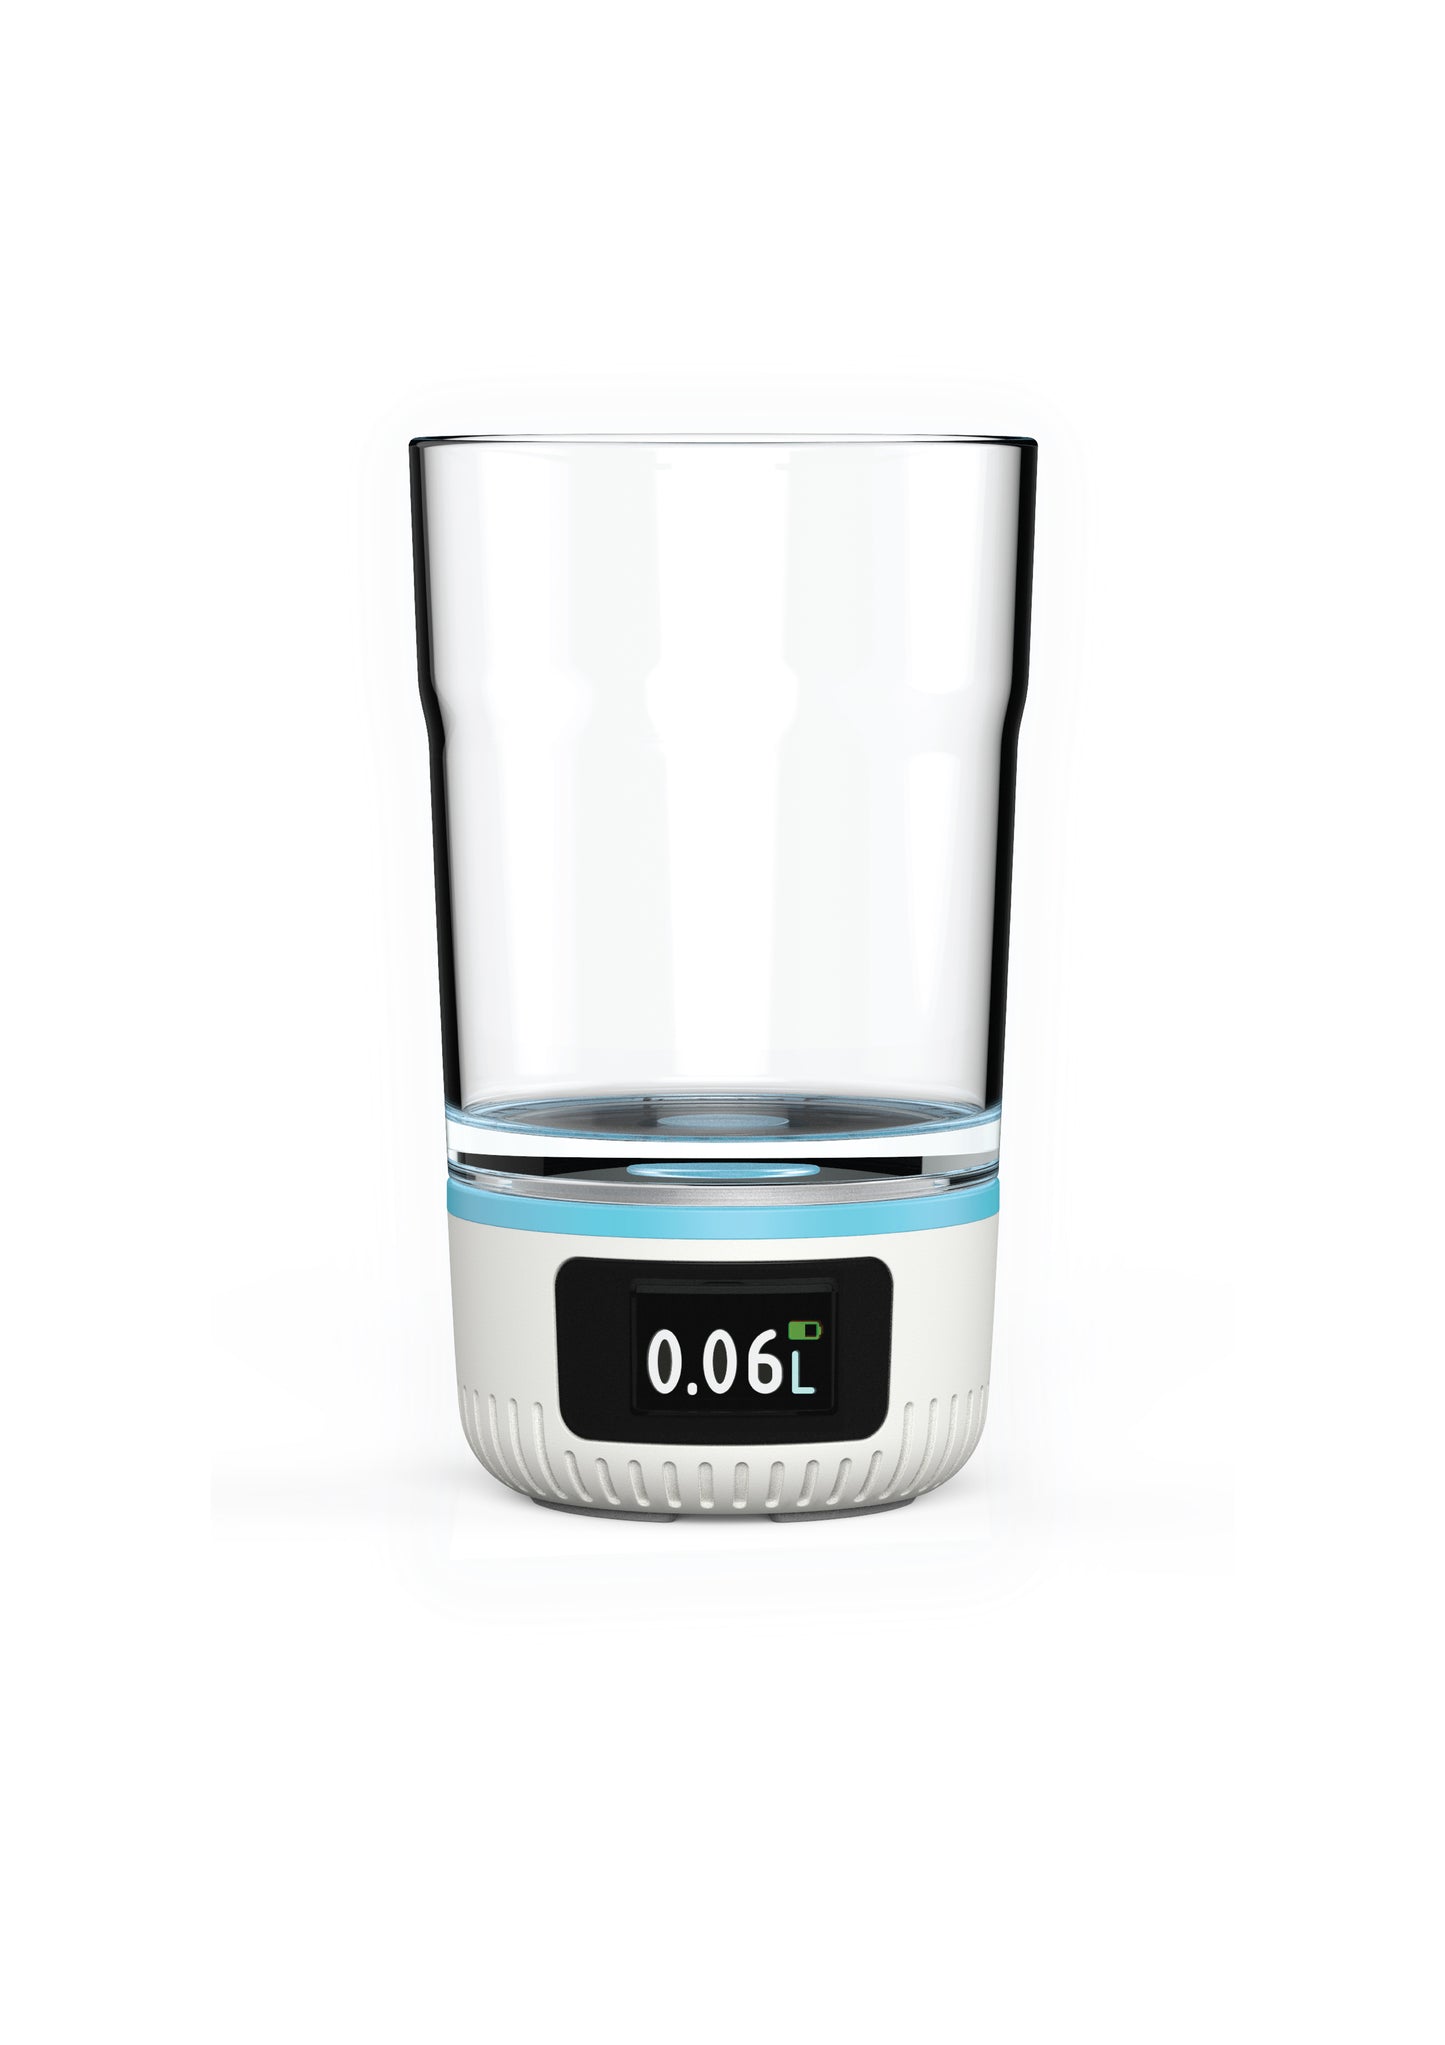 AquaTime: Smartes Trinkglas stimuliert und überwacht die Flüssigkeitsaufnahme rund um die Uhr